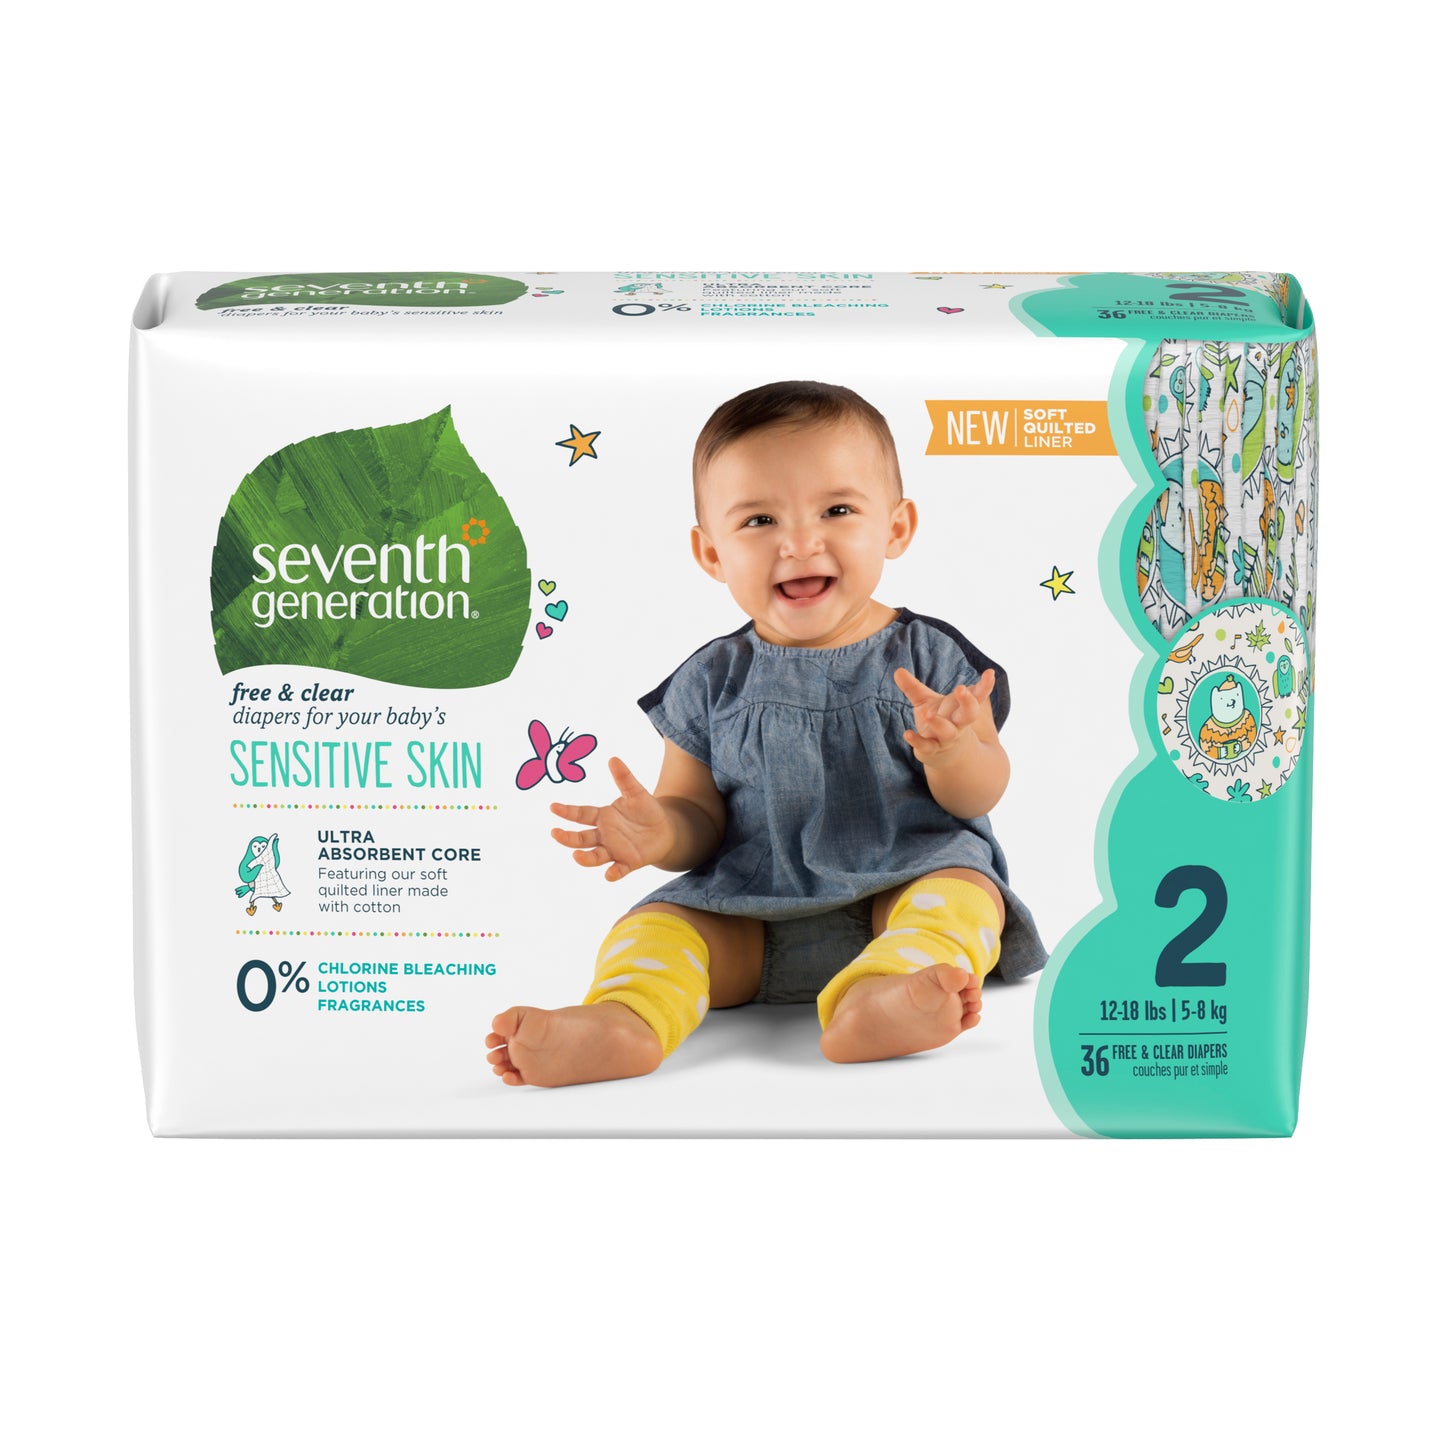 
                  
                    無氯防敏嬰兒紙尿片 - 細碼 (12-18磅)，36片，Baby Diapers Jumbo Stage 2，36pcs
                  
                